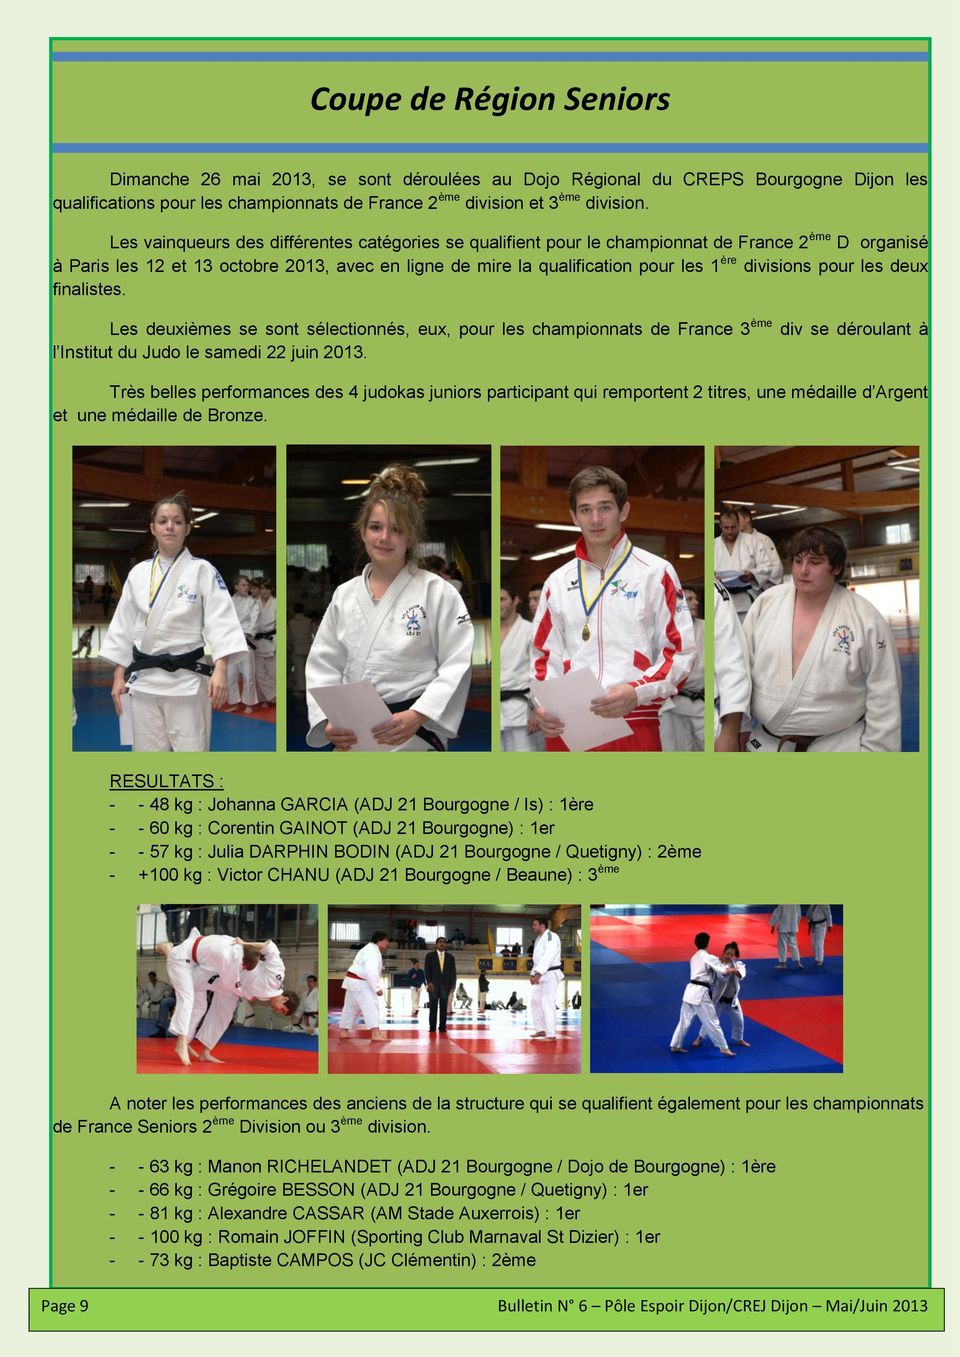 divisions pour les deux finalistes. Les deuxièmes se sont sélectionnés, eux, pour les championnats de France 3 ème div se déroulant à l Institut du Judo le samedi 22 juin 2013.